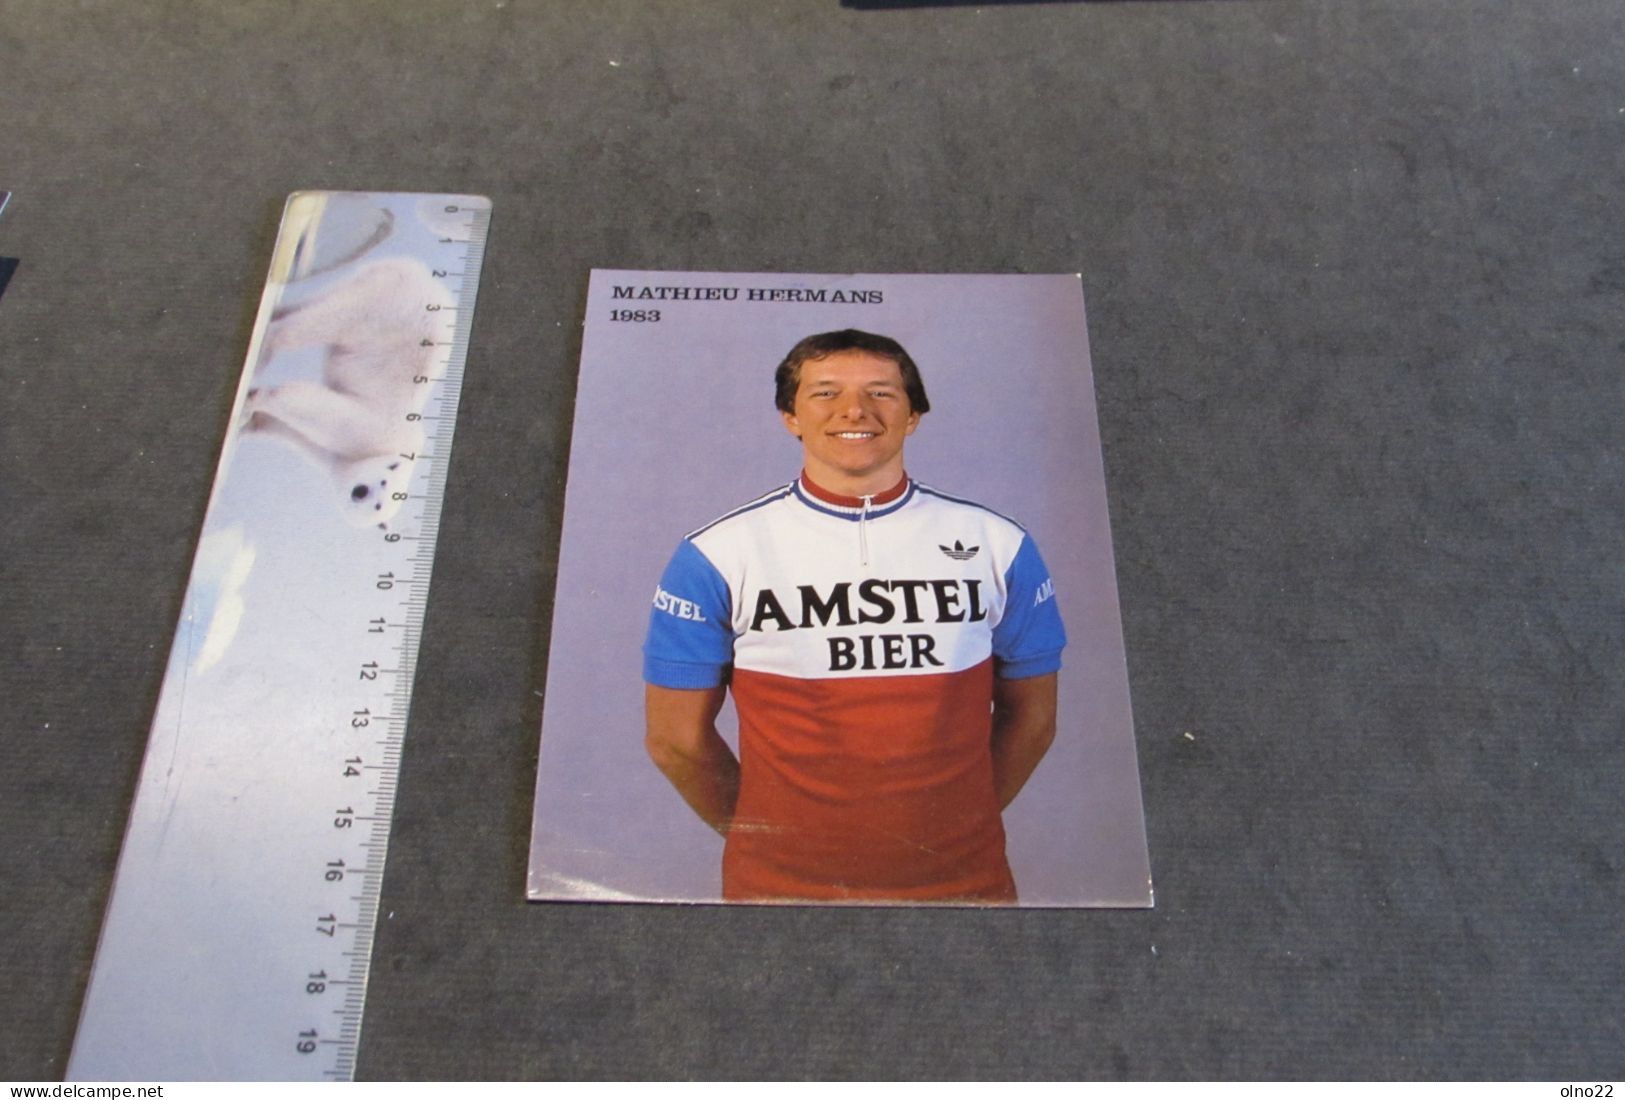 MATHIEU HERMANS 1983  - AMSTEL BIER - PHOTO COULEURS - VOIR SCANS - Personalità Sportive